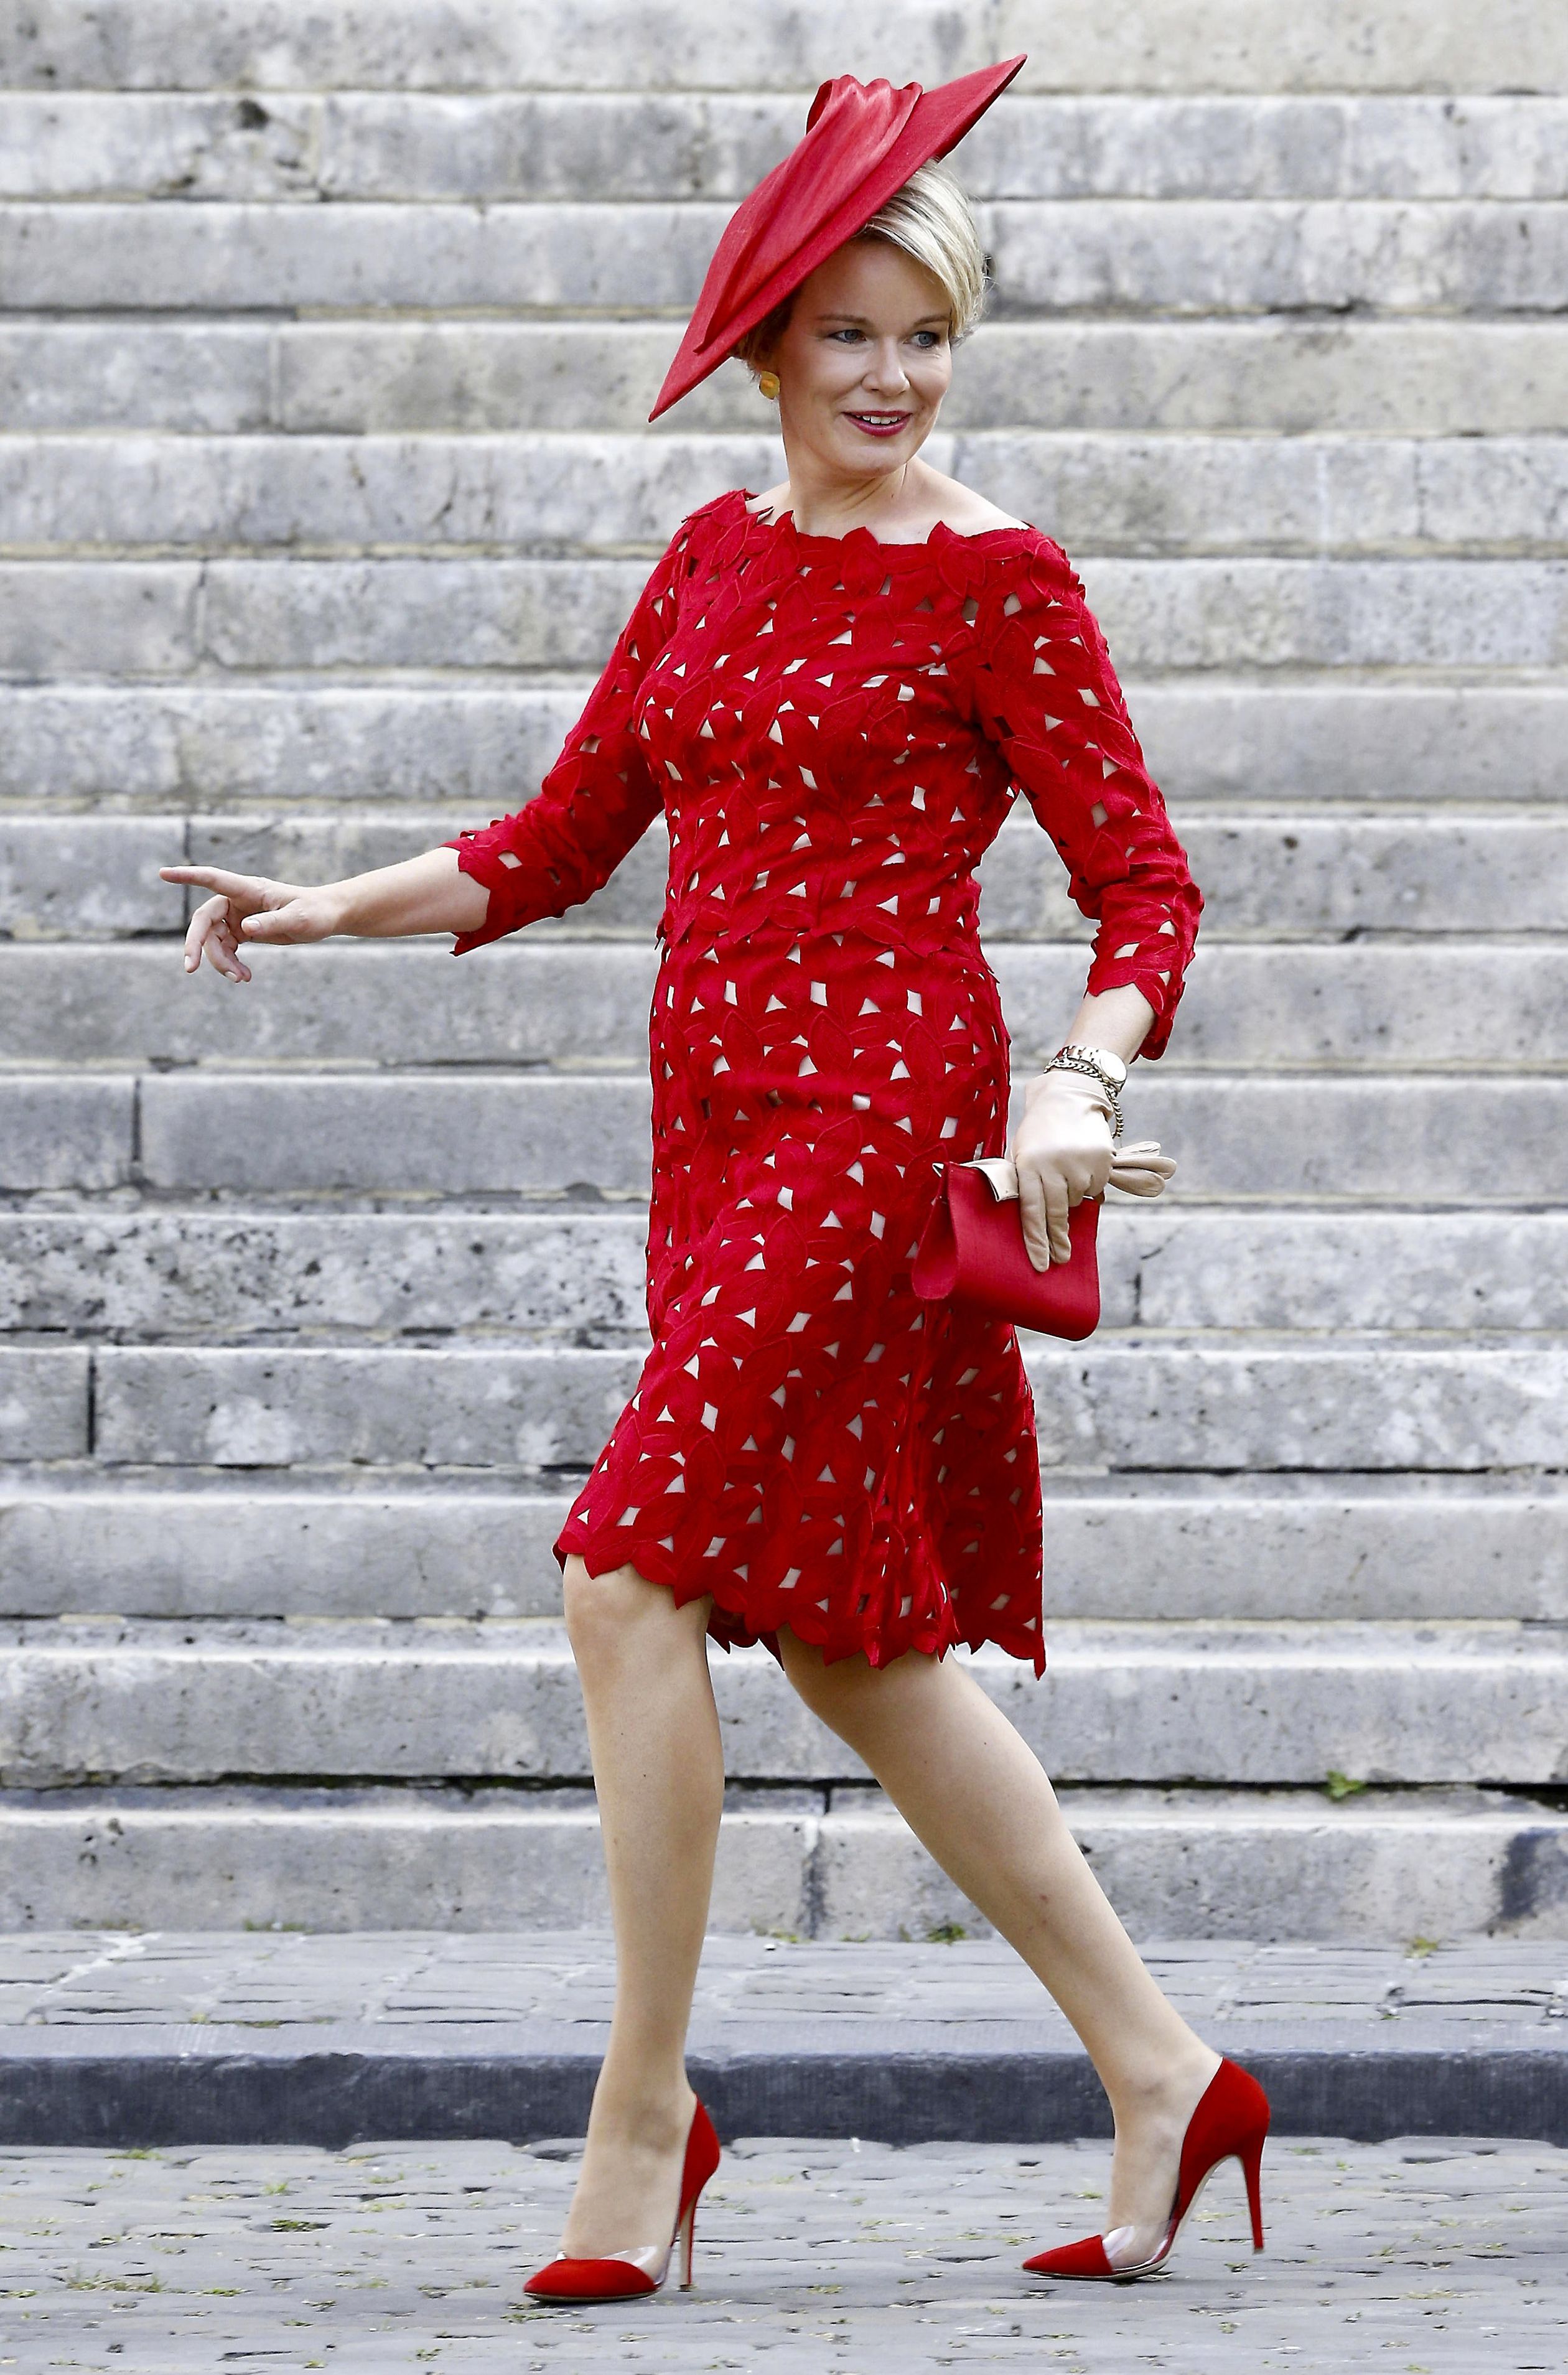 De felrode jurk is van de hand van Edouard Vermeulen van het Belgische modehuis Natan. De hoed is